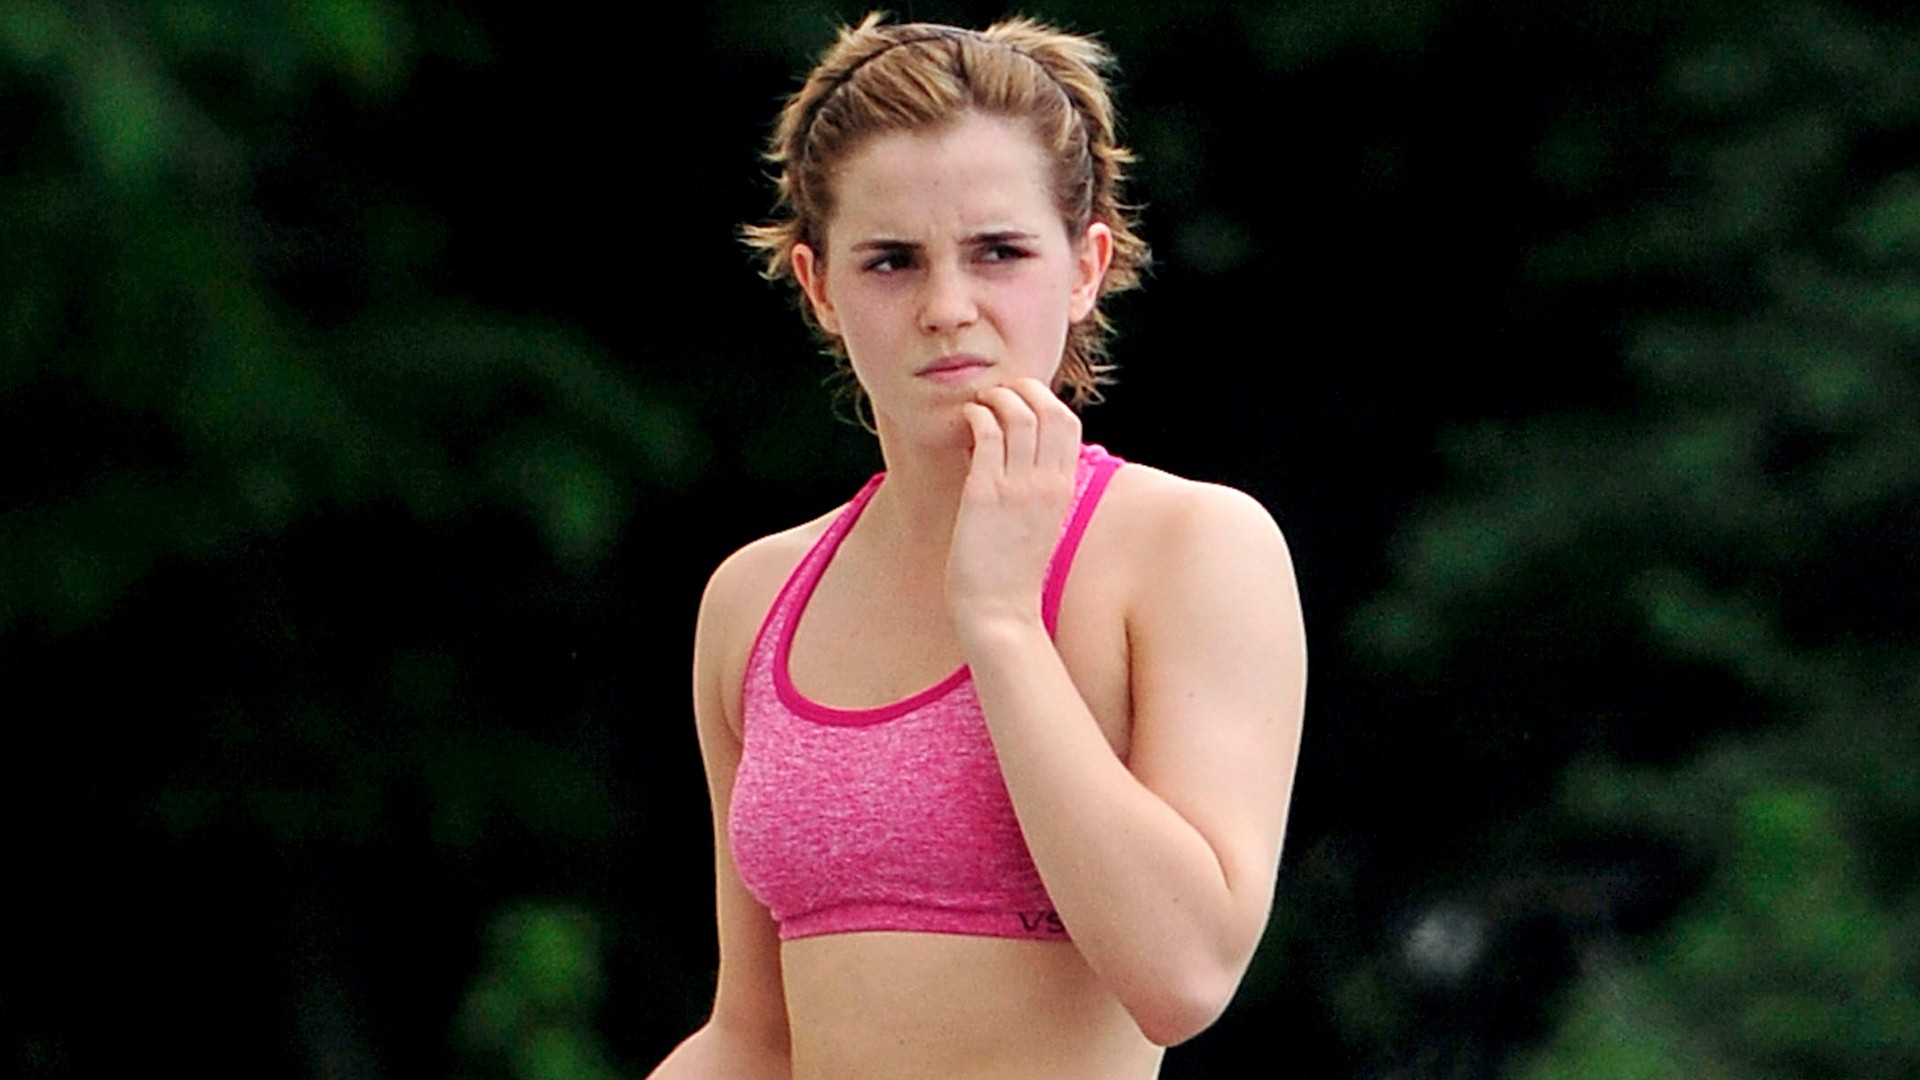 Sexy Look Of Emma Watson In Sports Bra Photo - Emma Watson Belly Ring , HD Wallpaper & Backgrounds